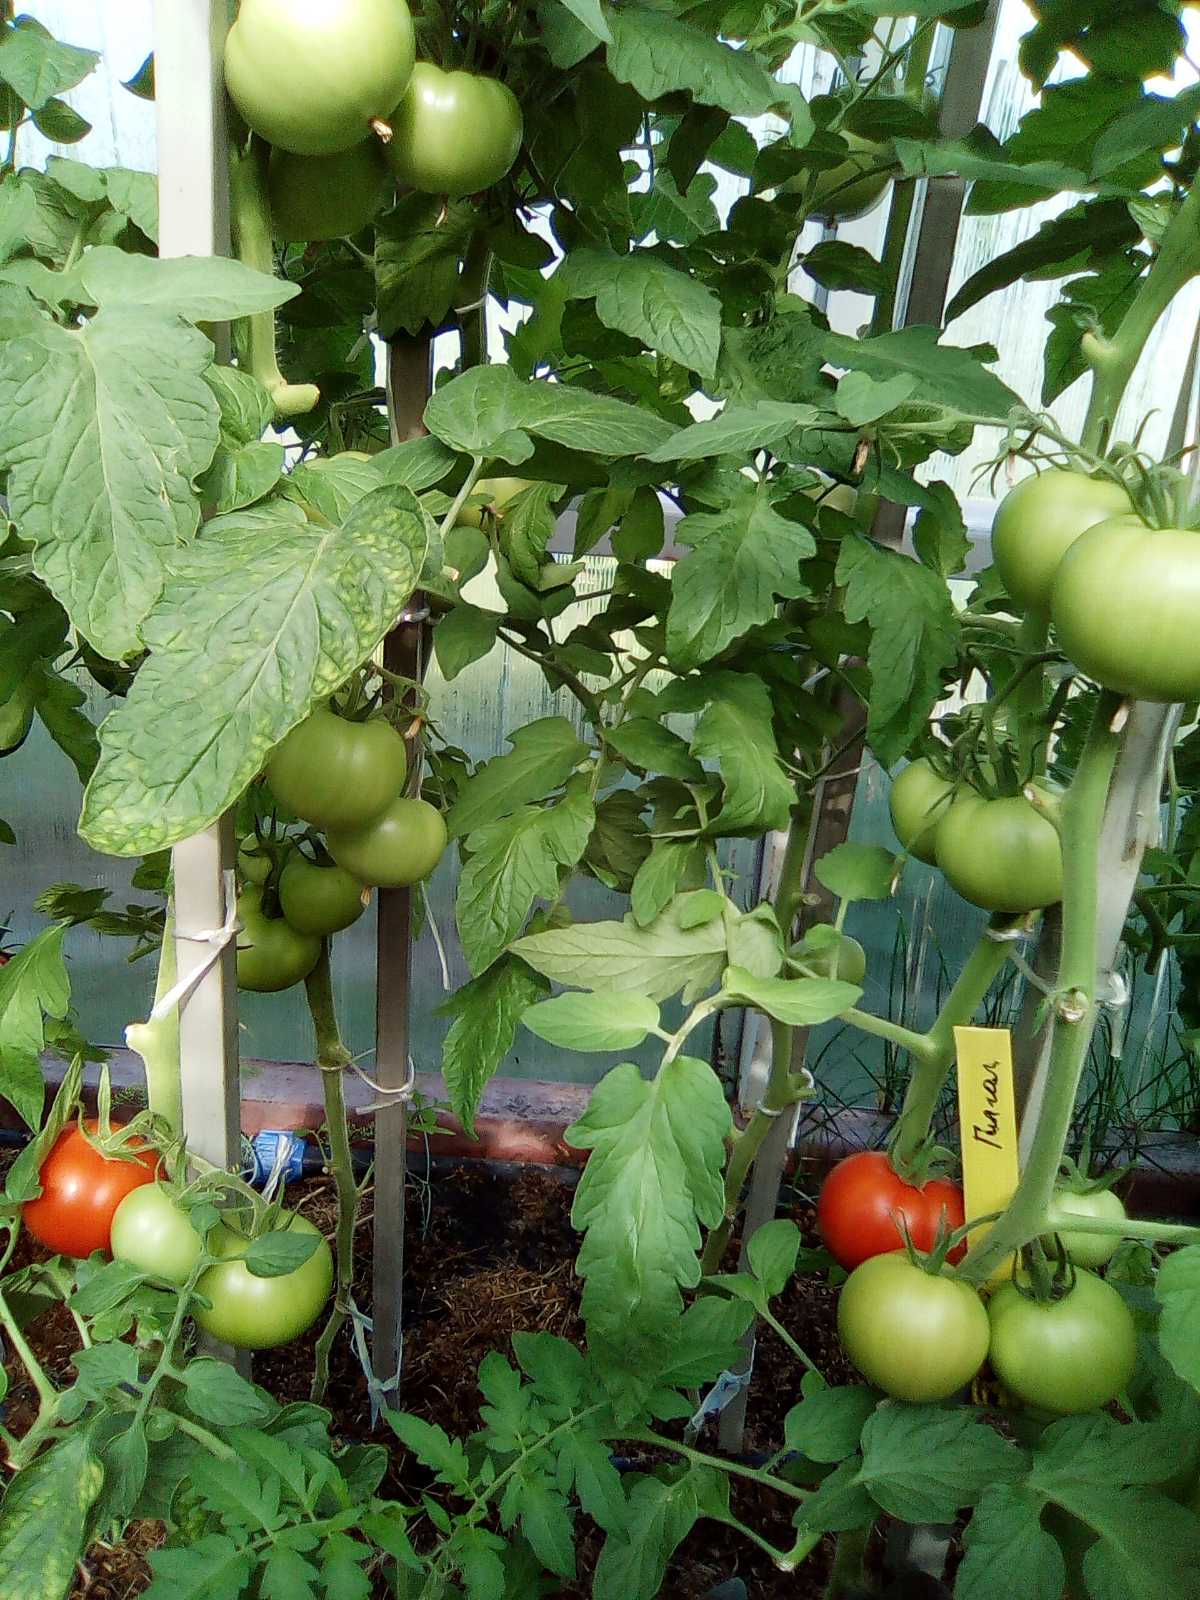 СОДЭБЦ рекомендует сорта и гибриды томатов для выращивания в открытом изащищенном грунтах Самарской области - Ленты новостей, объявлений,обновлений: ГБОУ ДО СО СОДЭБЦ